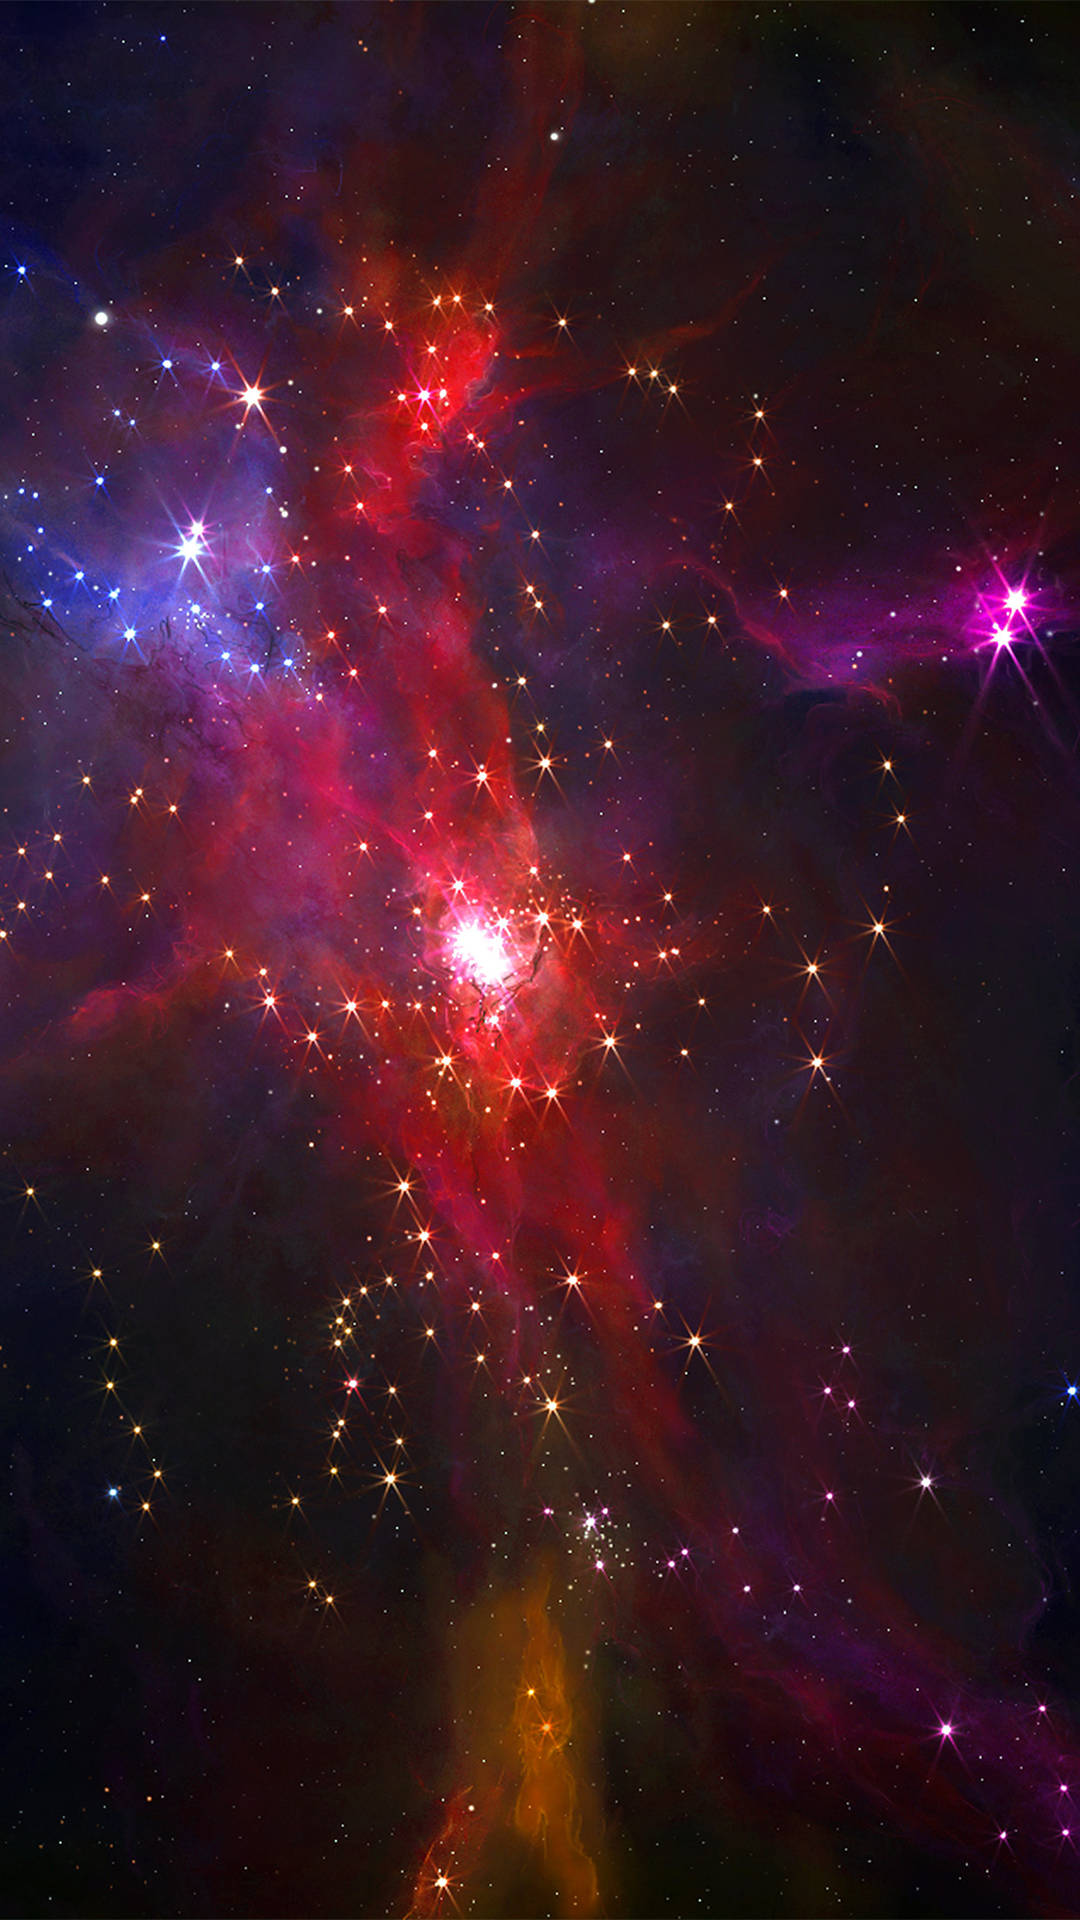 Galáxiavermelha Com Estrelas. Papel de Parede